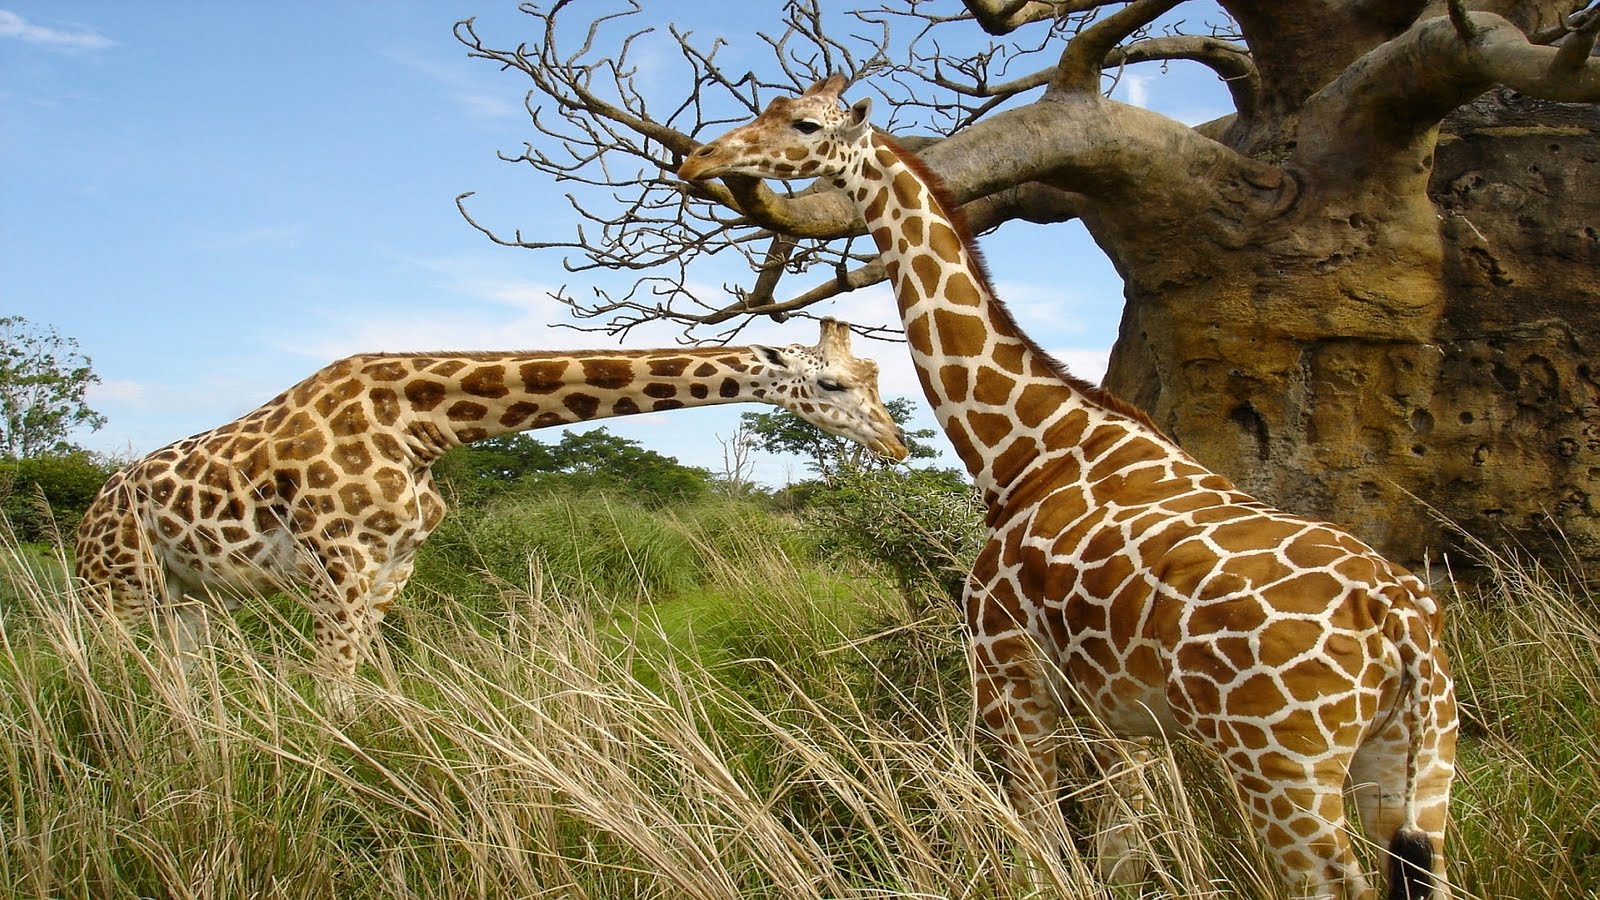 Lo bello de lo salvaje - Página 3 Animales-Salvajes-girafas_01